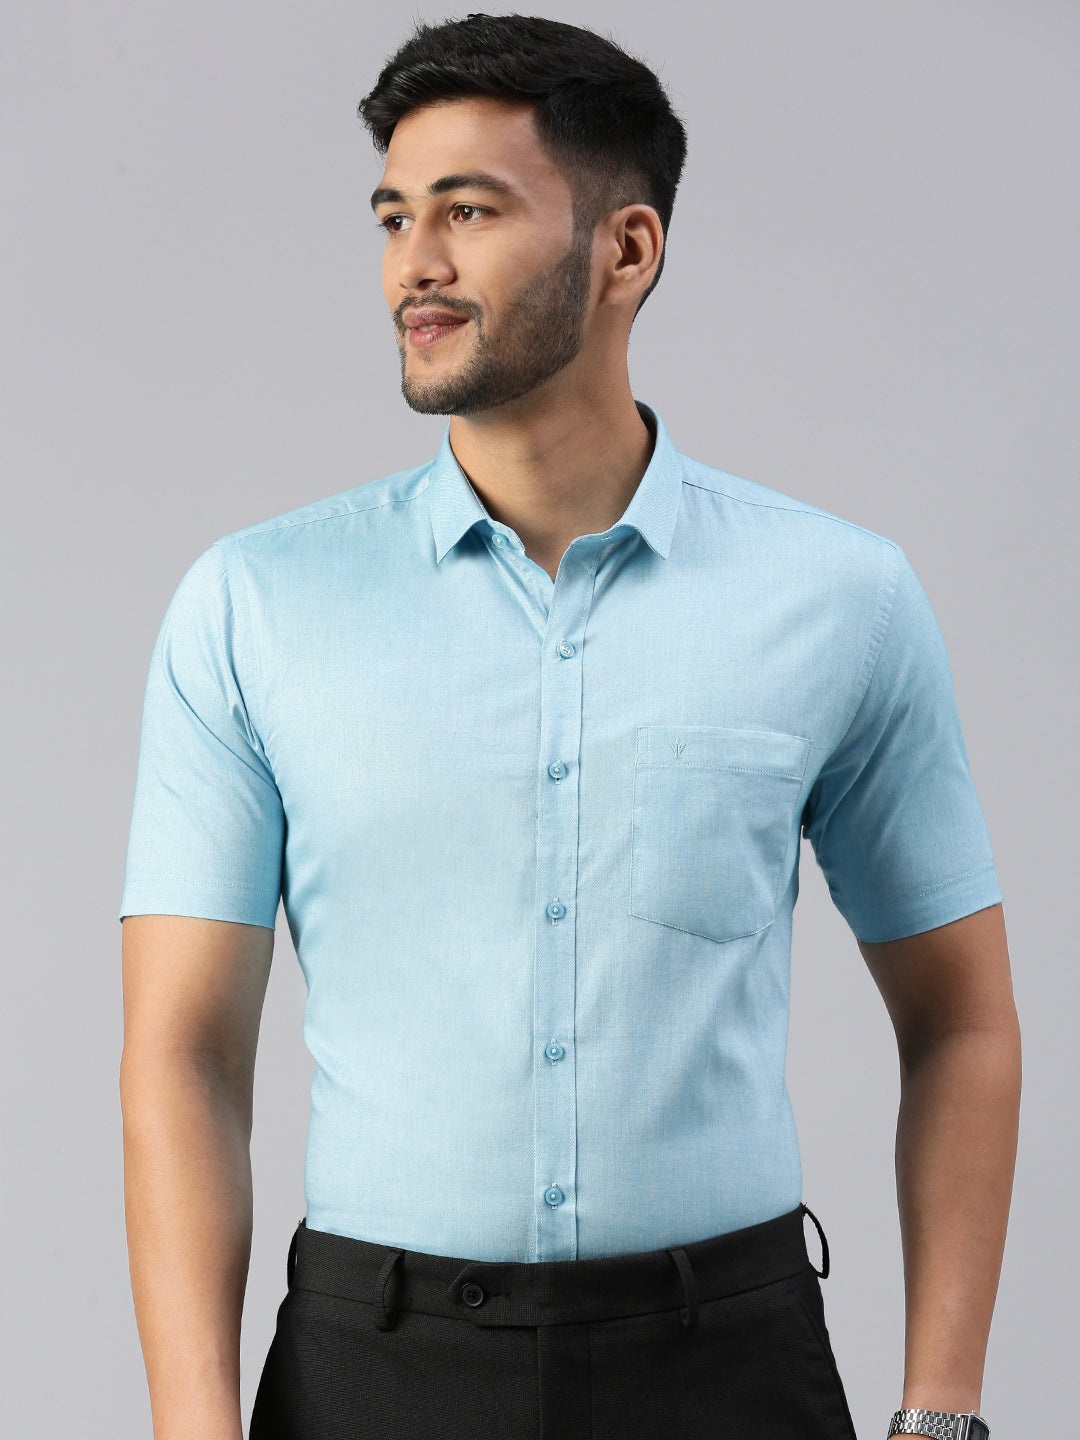 Buy Men's Plain Colour shirts Online, Best Mens Plain Shirts, Half Sleeve/Full  Sleeve Colour Shirts for Men